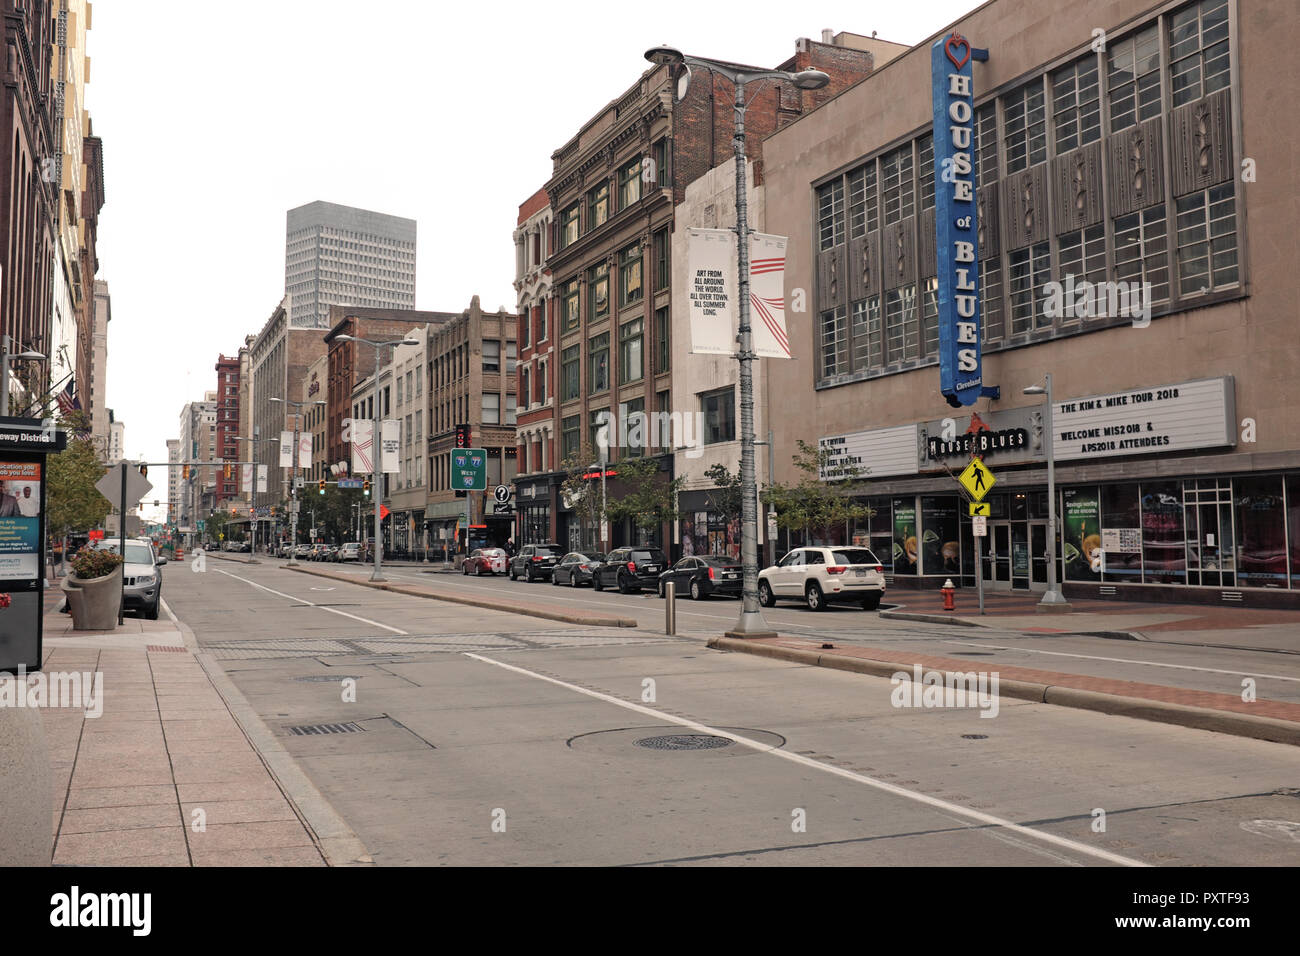 Apparemment une desterted d'Euclid Avenue, dans le centre-ville de Cleveland, Ohio, USA sur un week-end d'après-midi. Banque D'Images